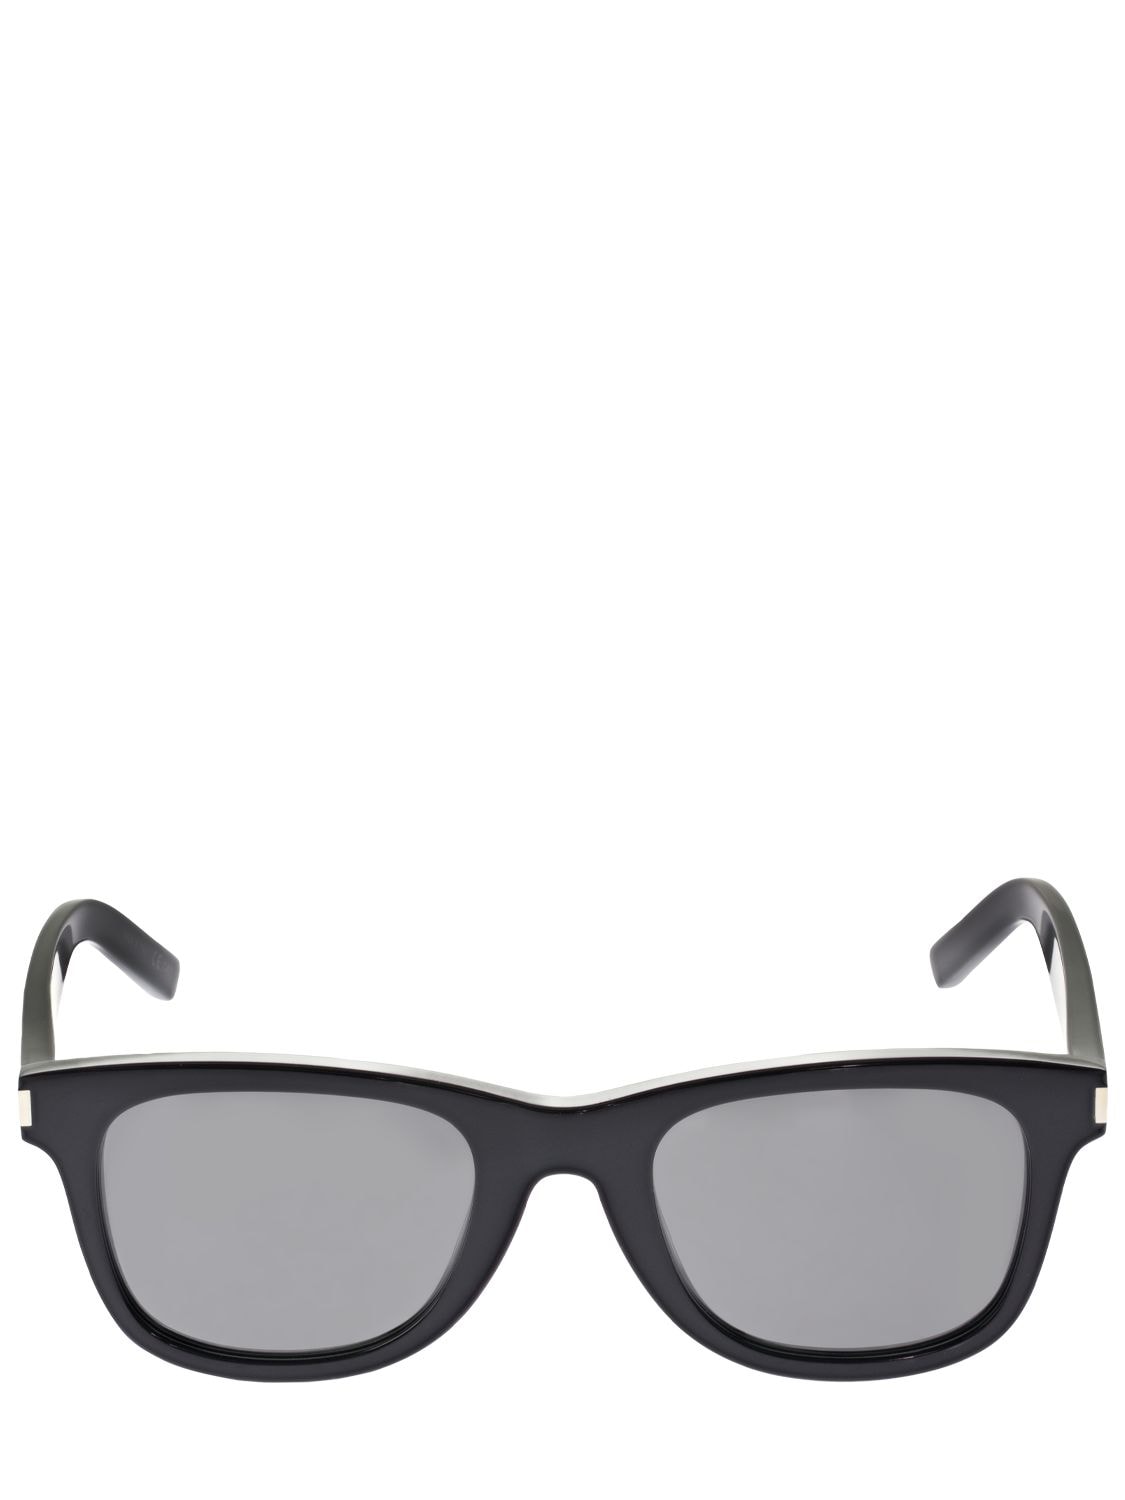 Saint Laurent Classic Sl 51 Acetate Sunglasses In Black